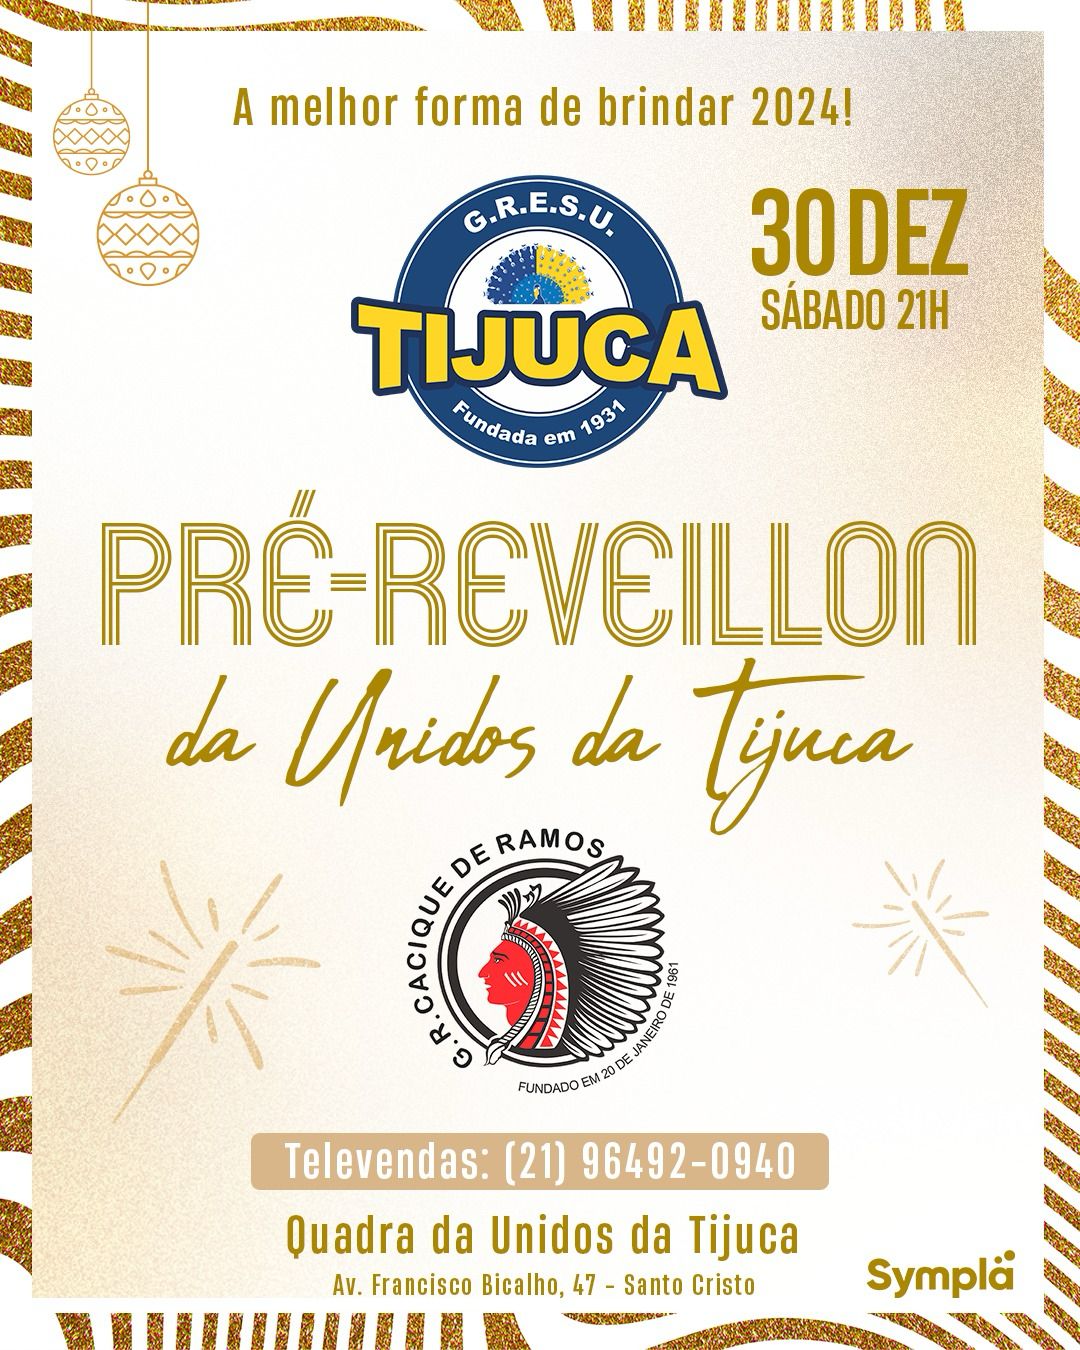 Unidos da Tijuca realiza Pré-Réveillon neste sábado com Cacique de Ramos